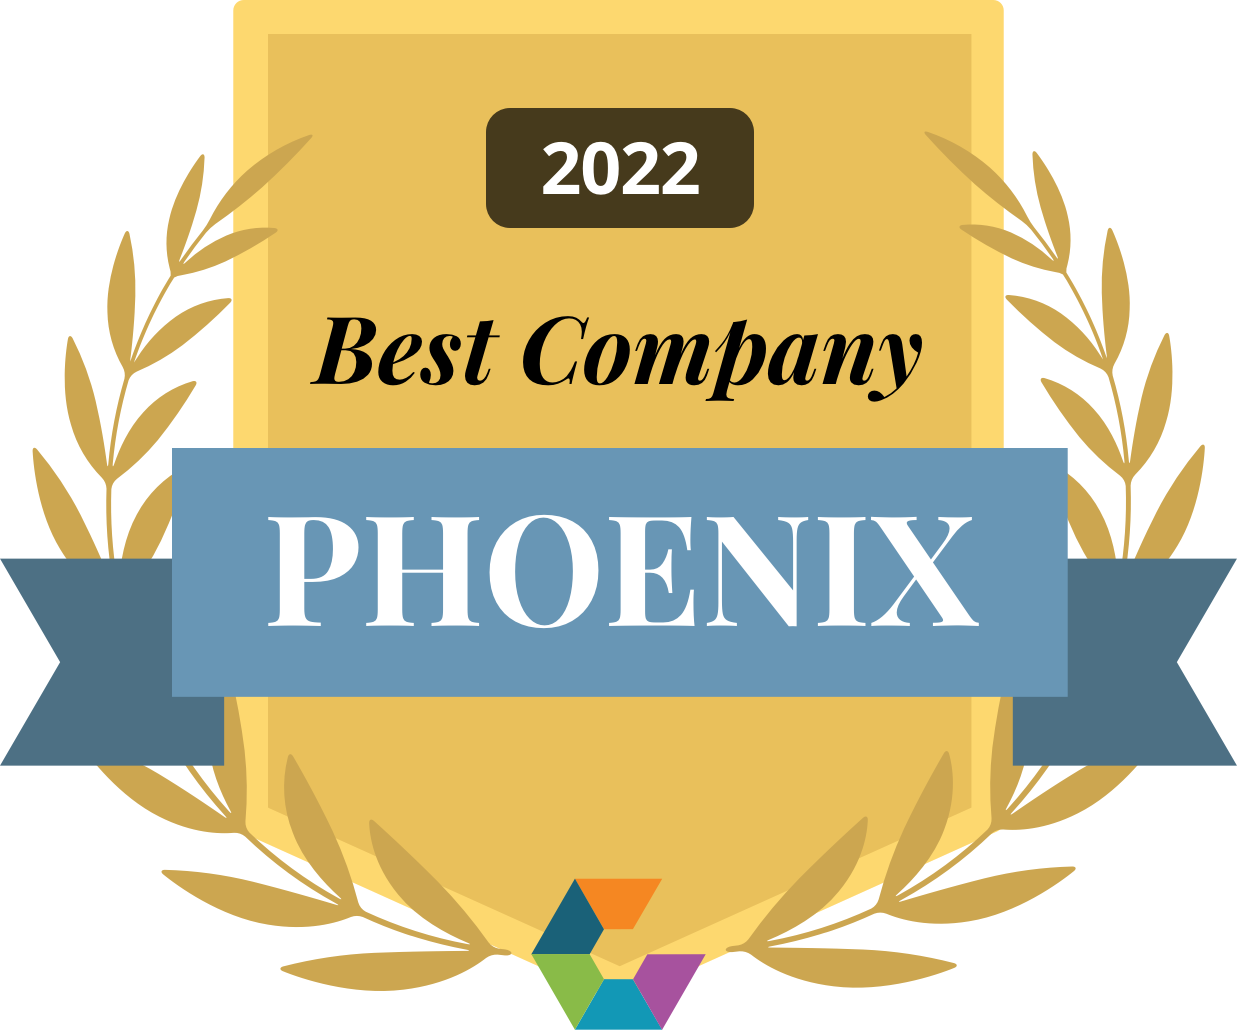 Best Company in Phoenix, 2022